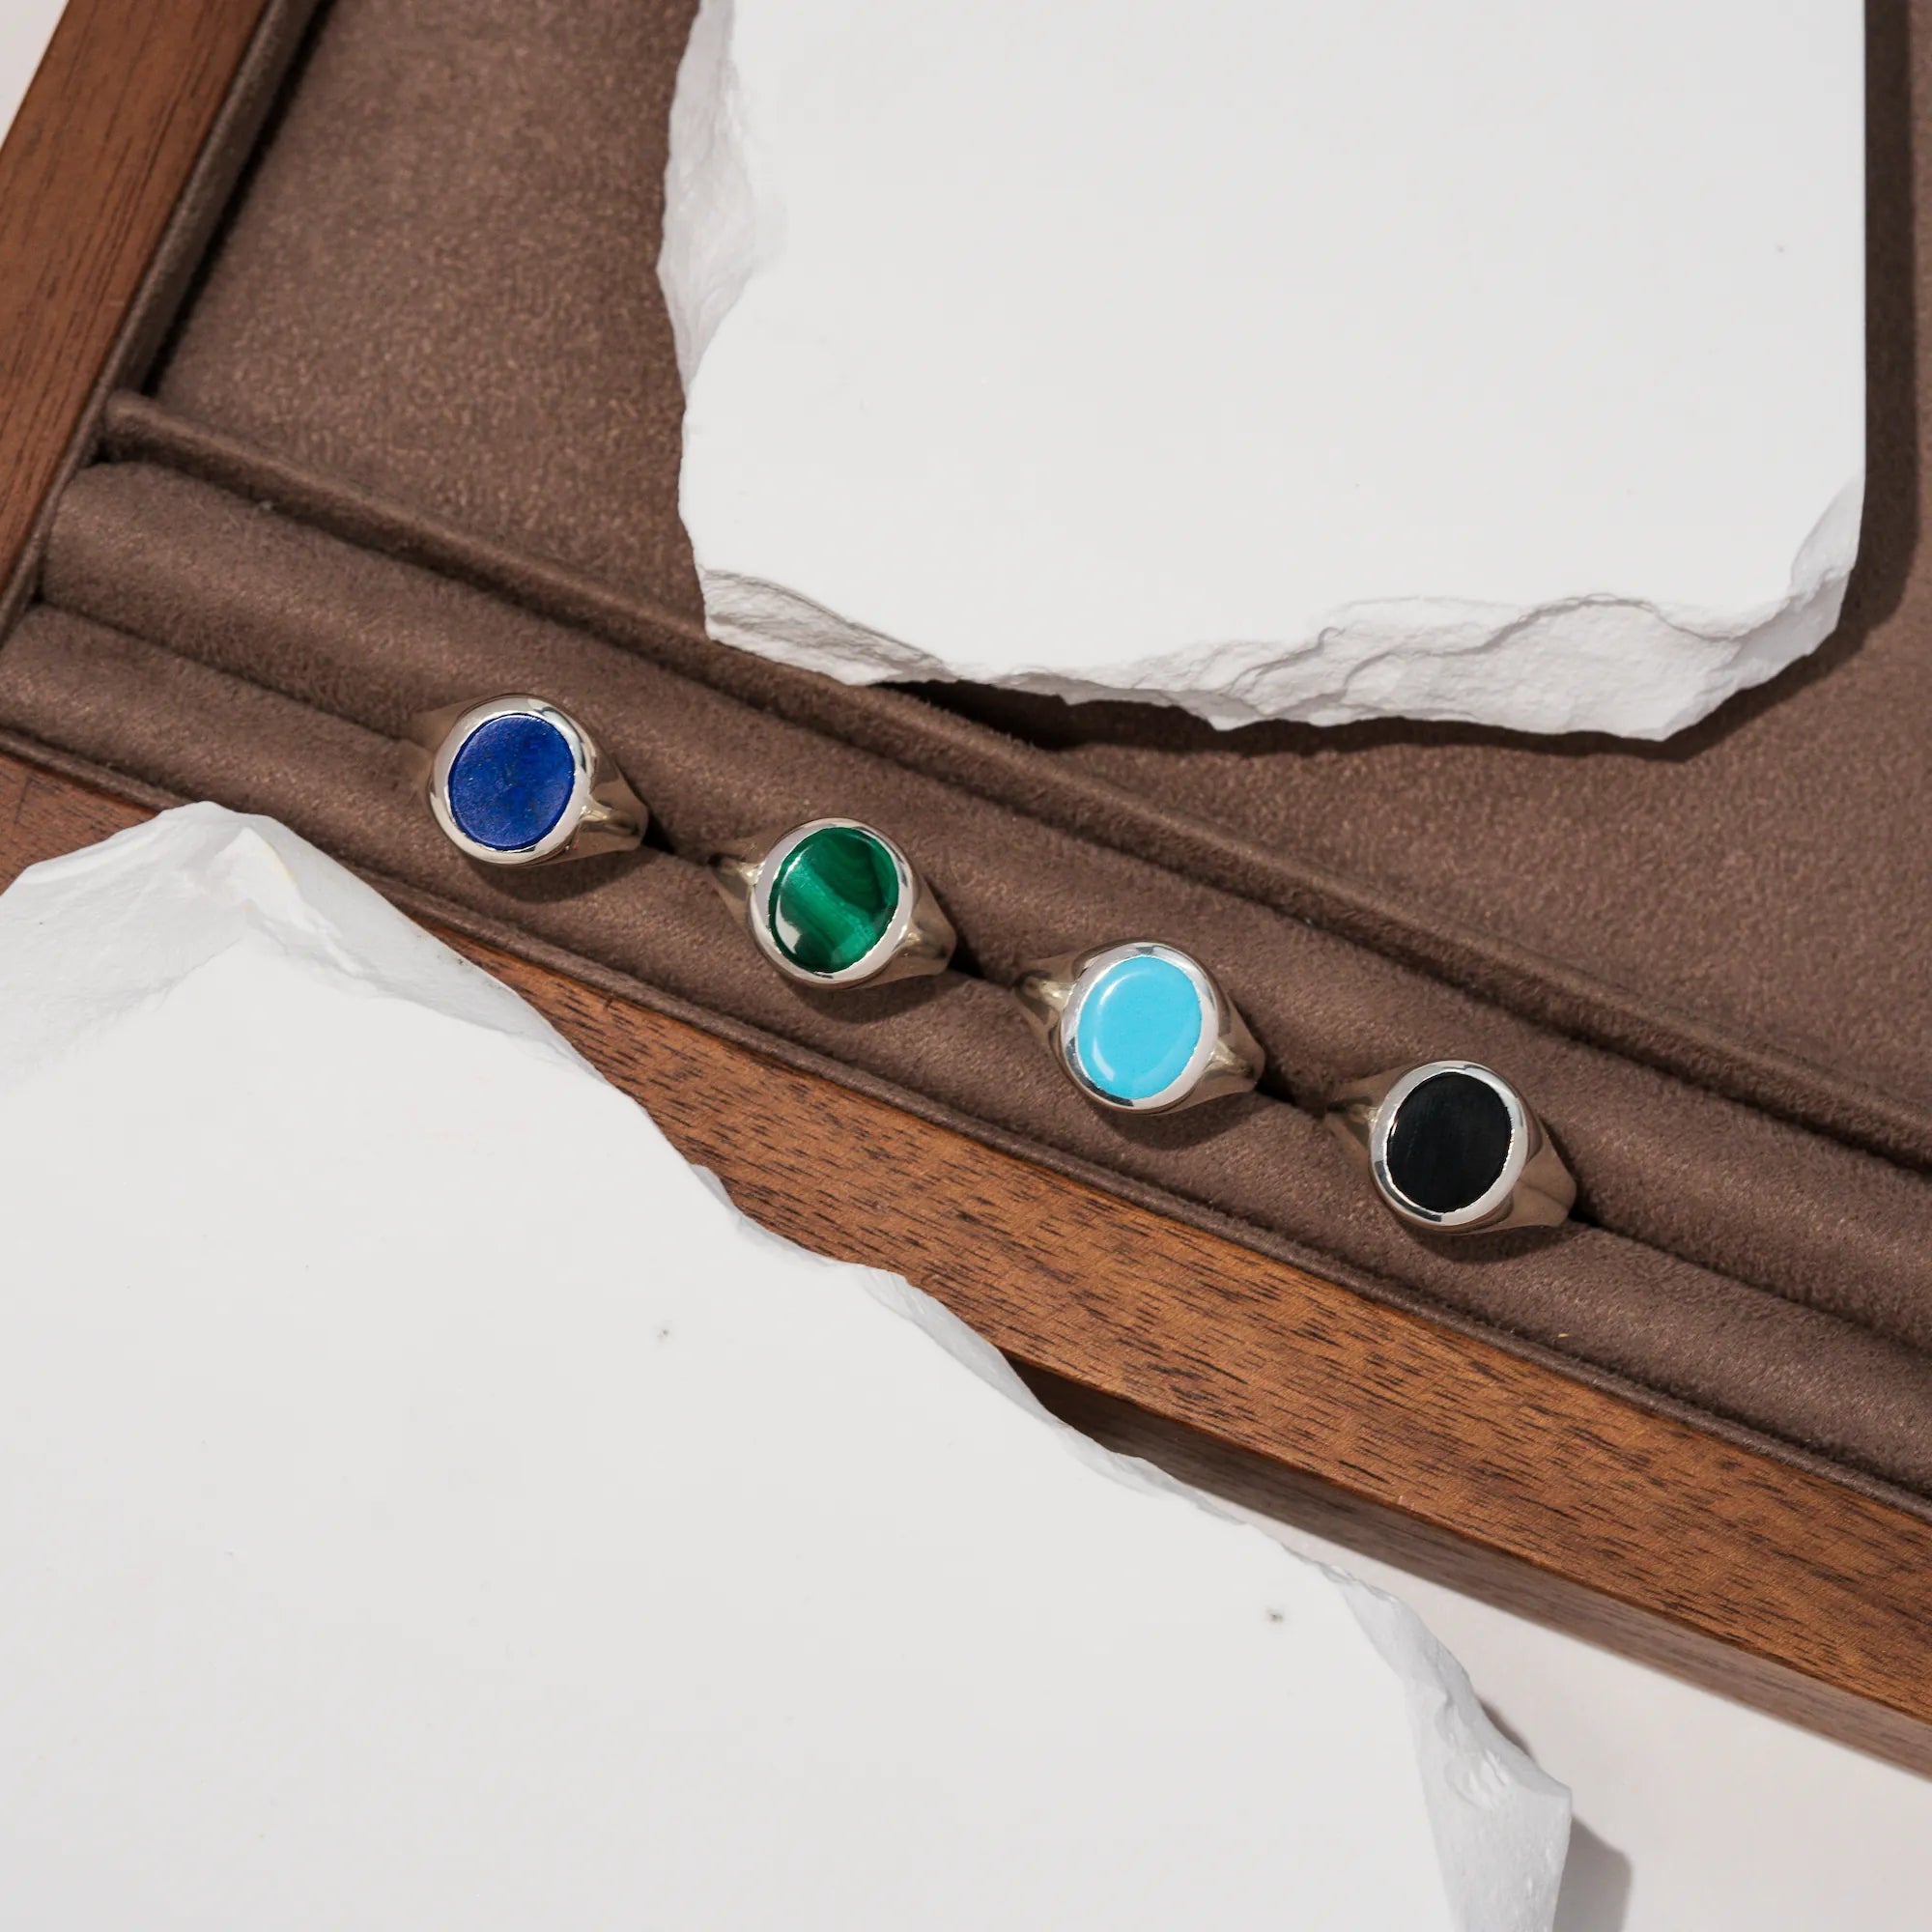 Produktfotografie auf einem braunem Holztablett mit den vier aus Silber handgefertigten Siegelringe aus der Schmuckatelier Lang Collection mit Malachit, Onyx, Türkis oder Lapis Lazuli